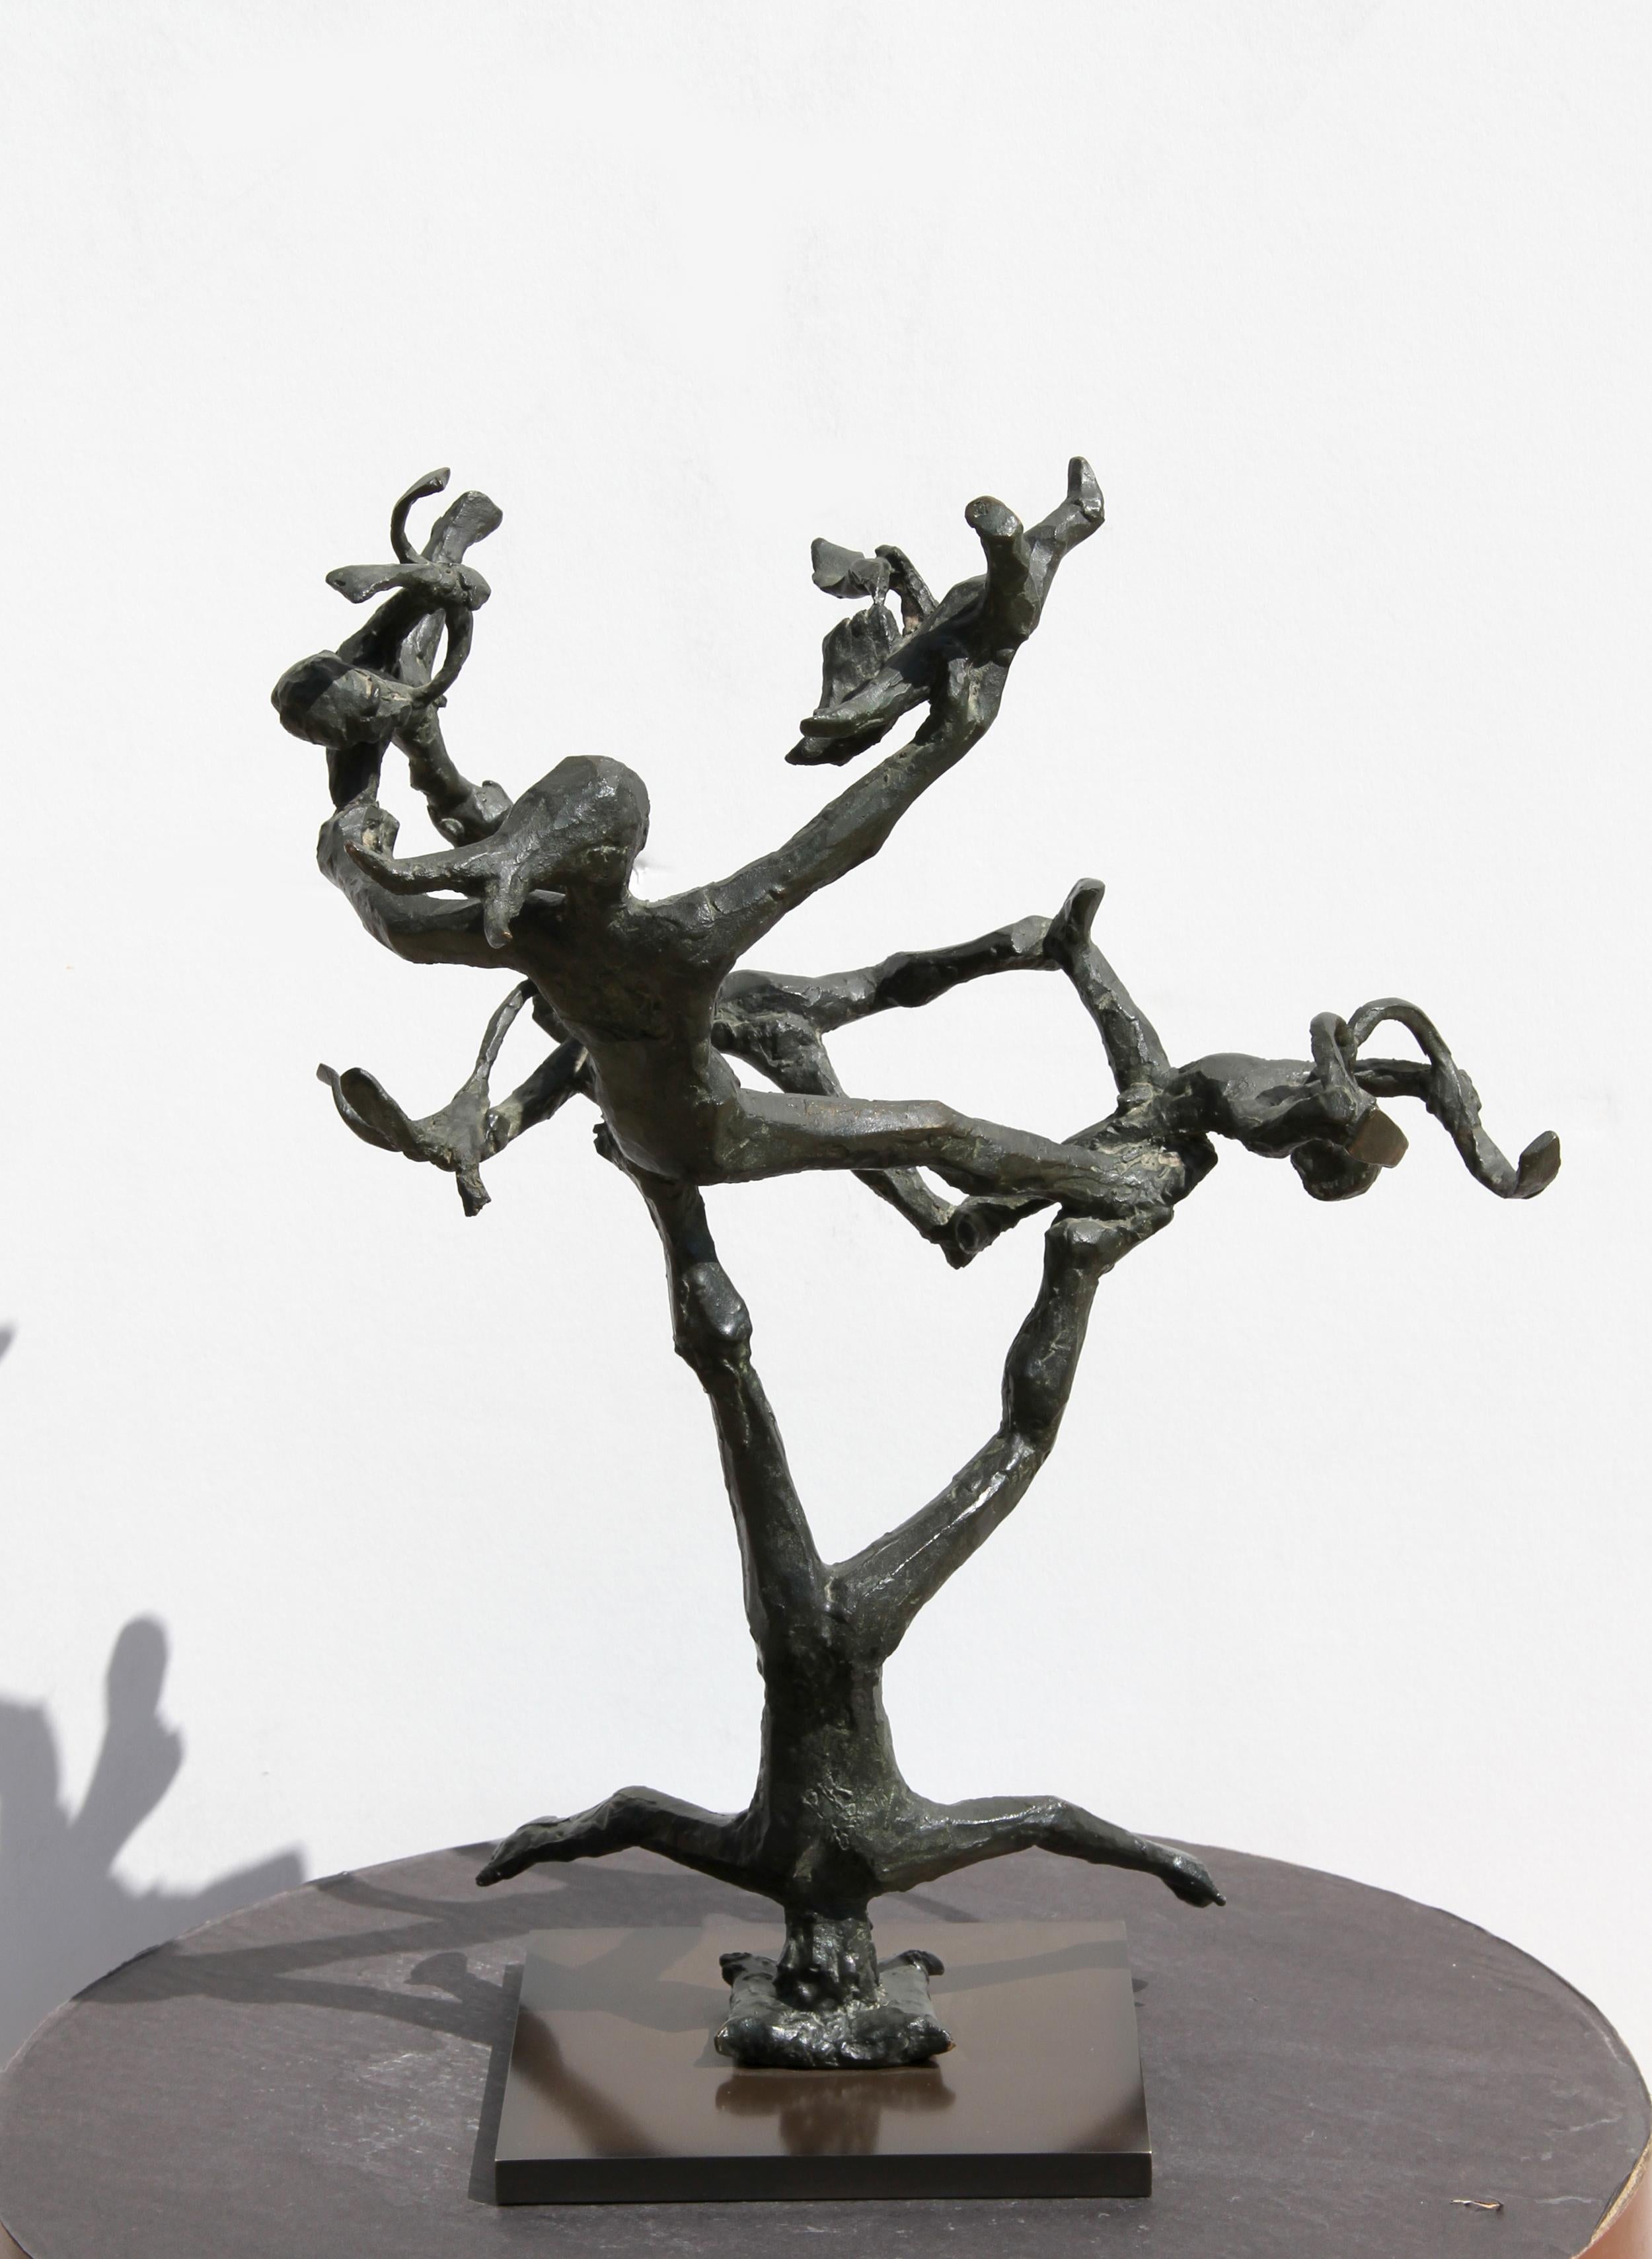 Artist: Unknown
Title: Acrobats
Year: 1968
Medium: Bronze Sculpture, signed 'PR'
Size: 18 in. x 14 in. x 10 in. (45.72 cm x 35.56 cm x 25.4 cm)